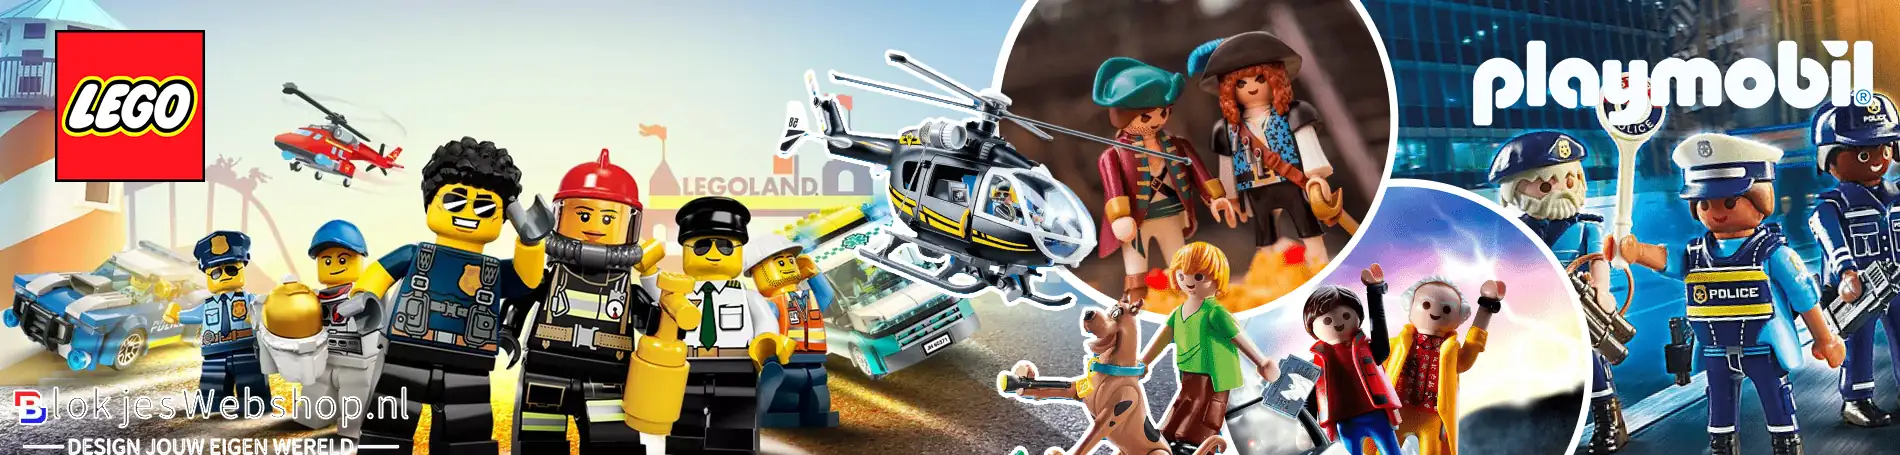 Lego en Playmobil Webshop